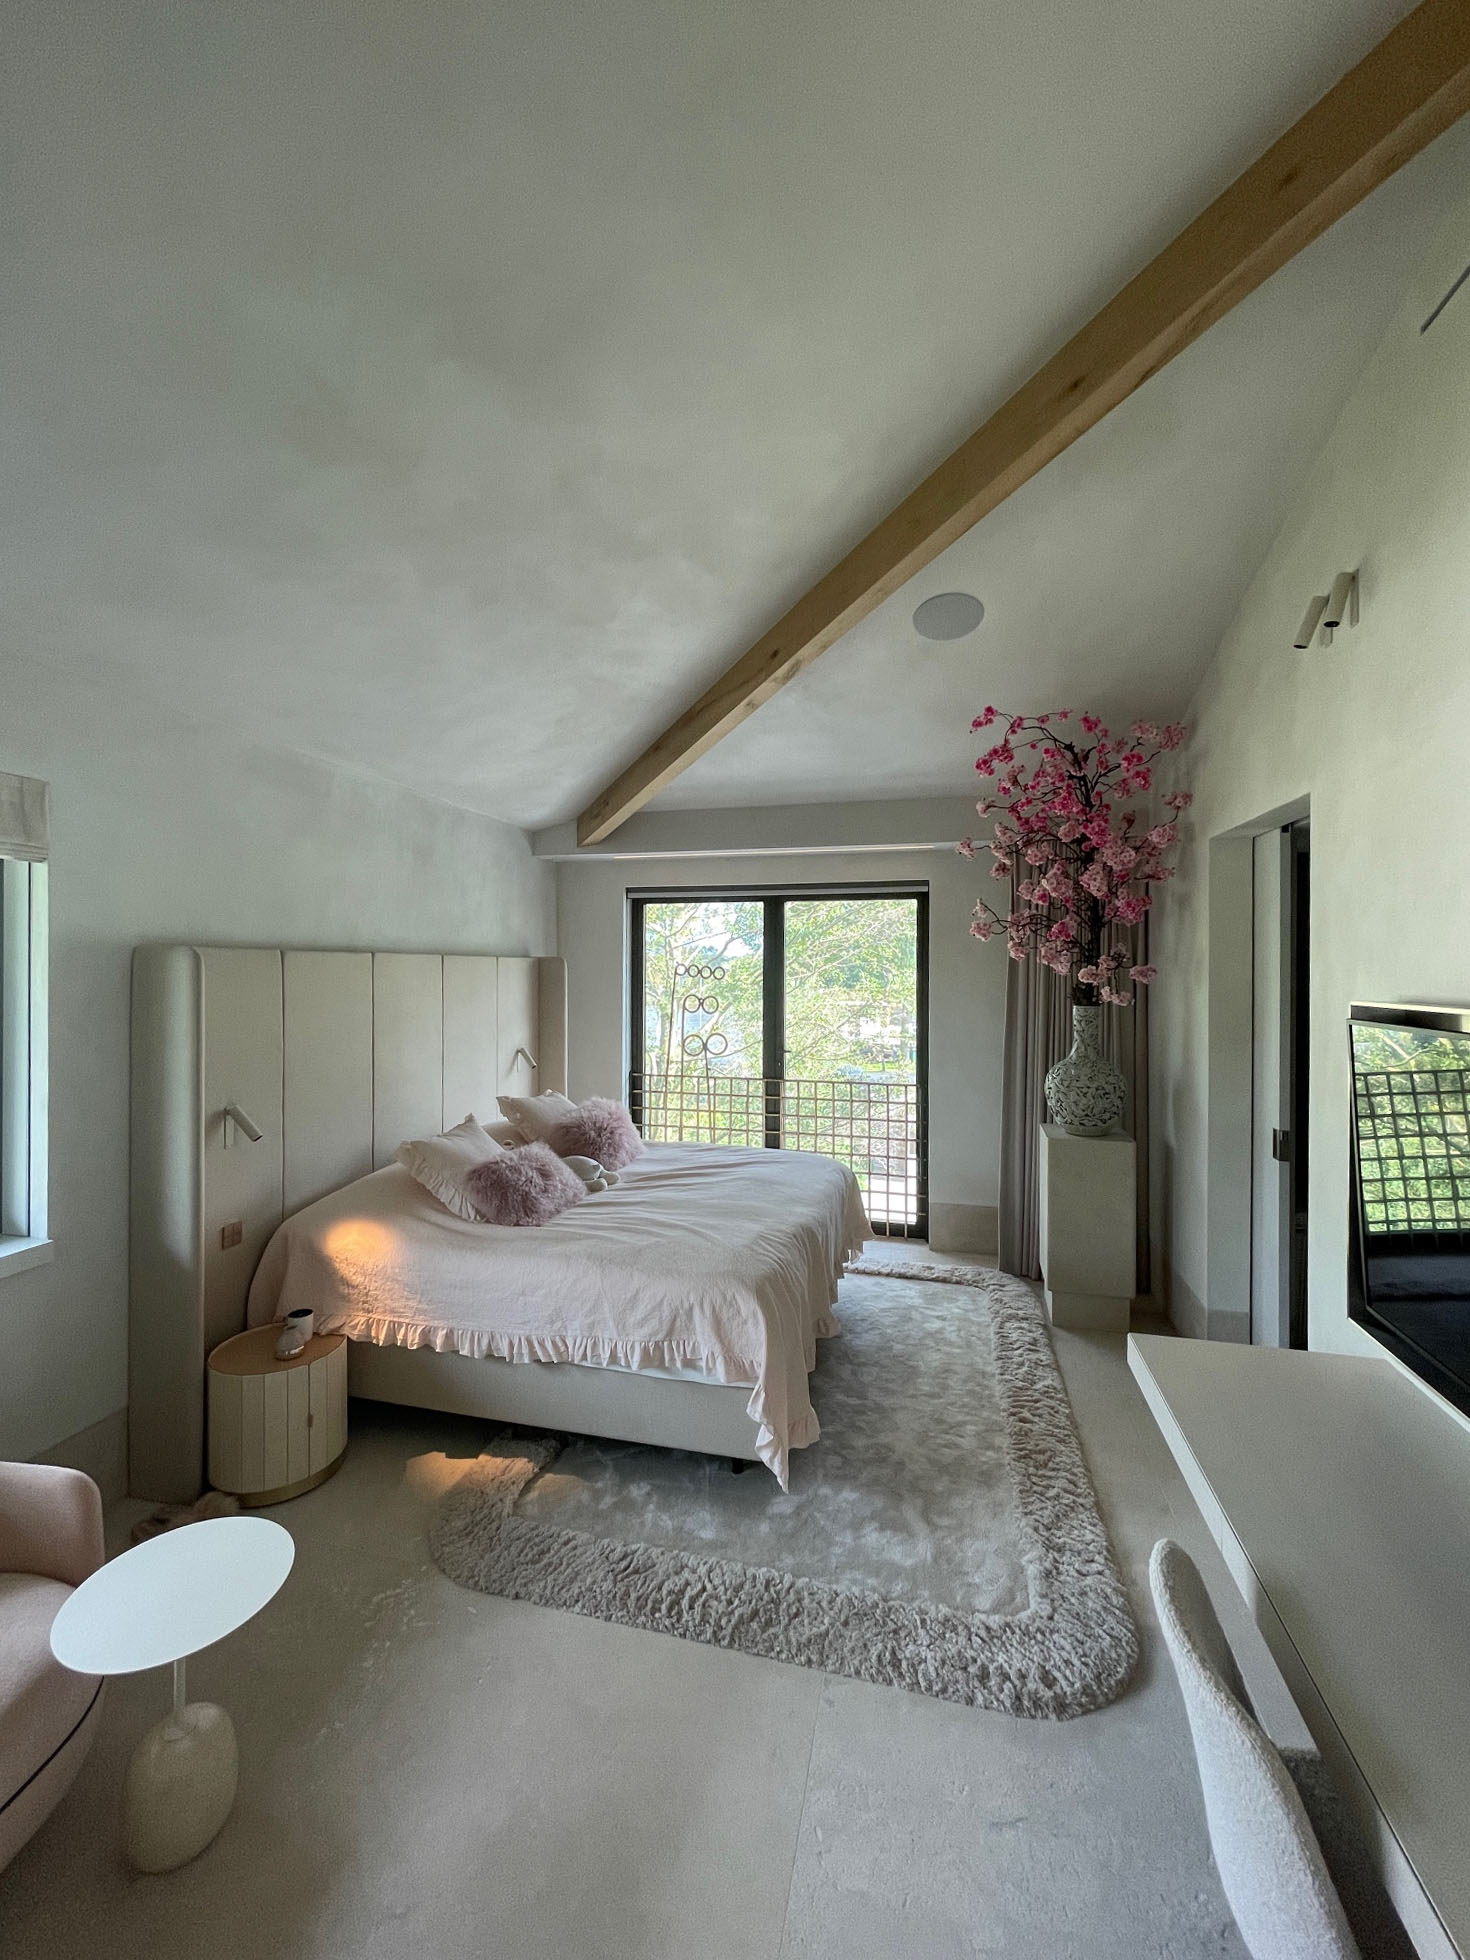 slaapkamer met clayfinish op wanden en plafond